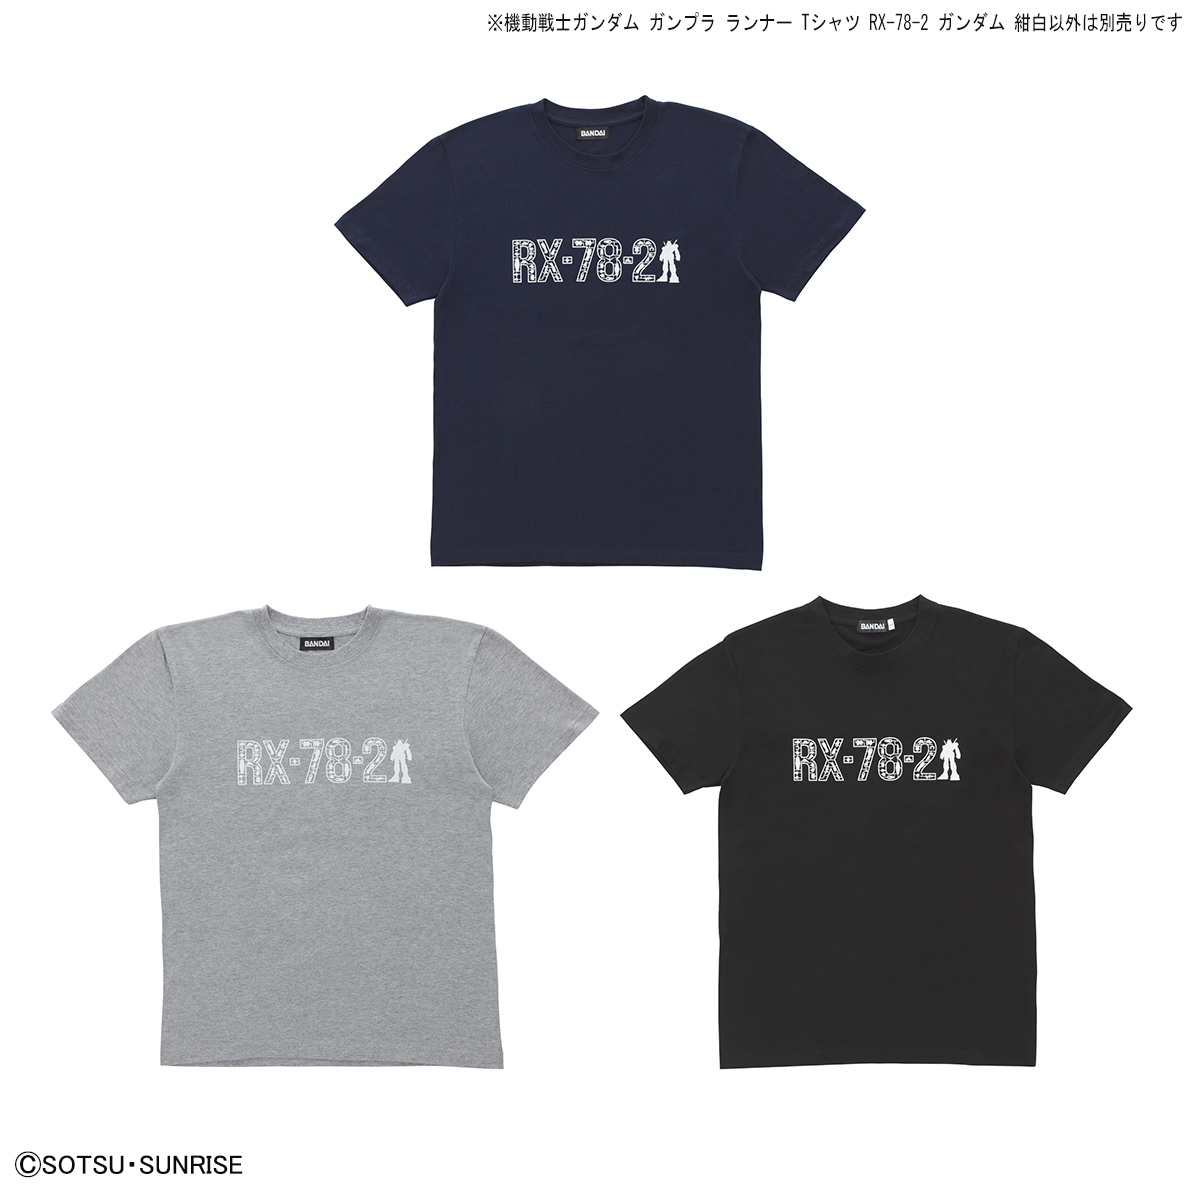 機動戦士ガンダム ガンプラ ランナー Tシャツ RX-78-2 ガンダム 紺白 商品画像